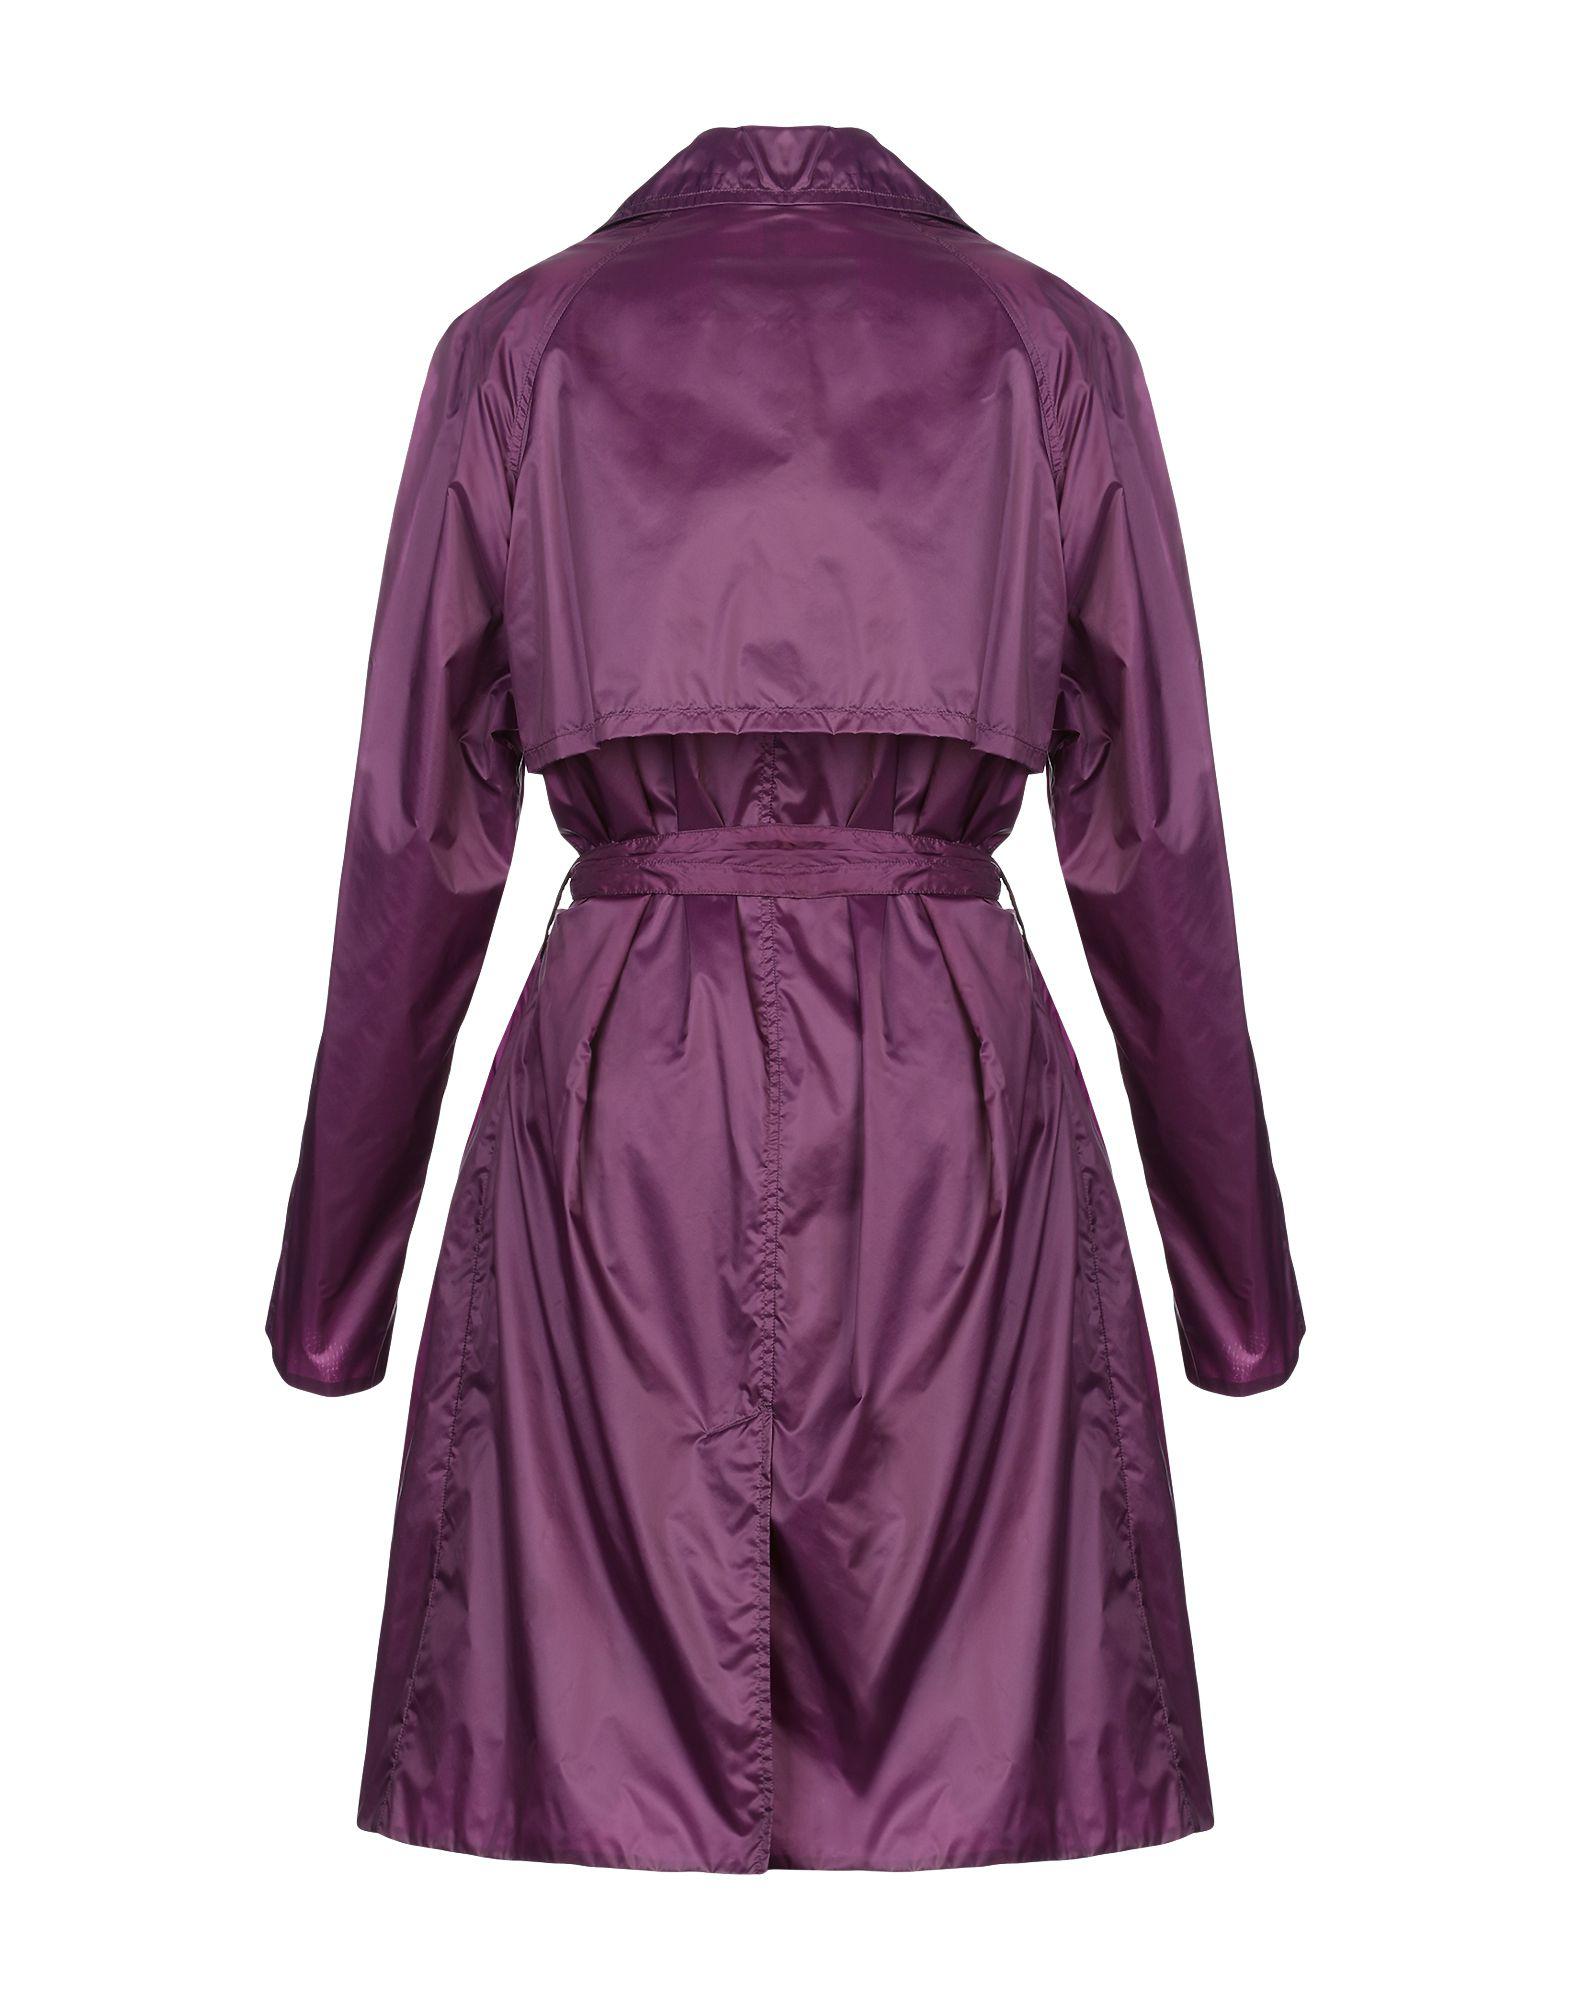 Versace Synthetic Overcoat in Dark Purple (Purple) for Men - Lyst